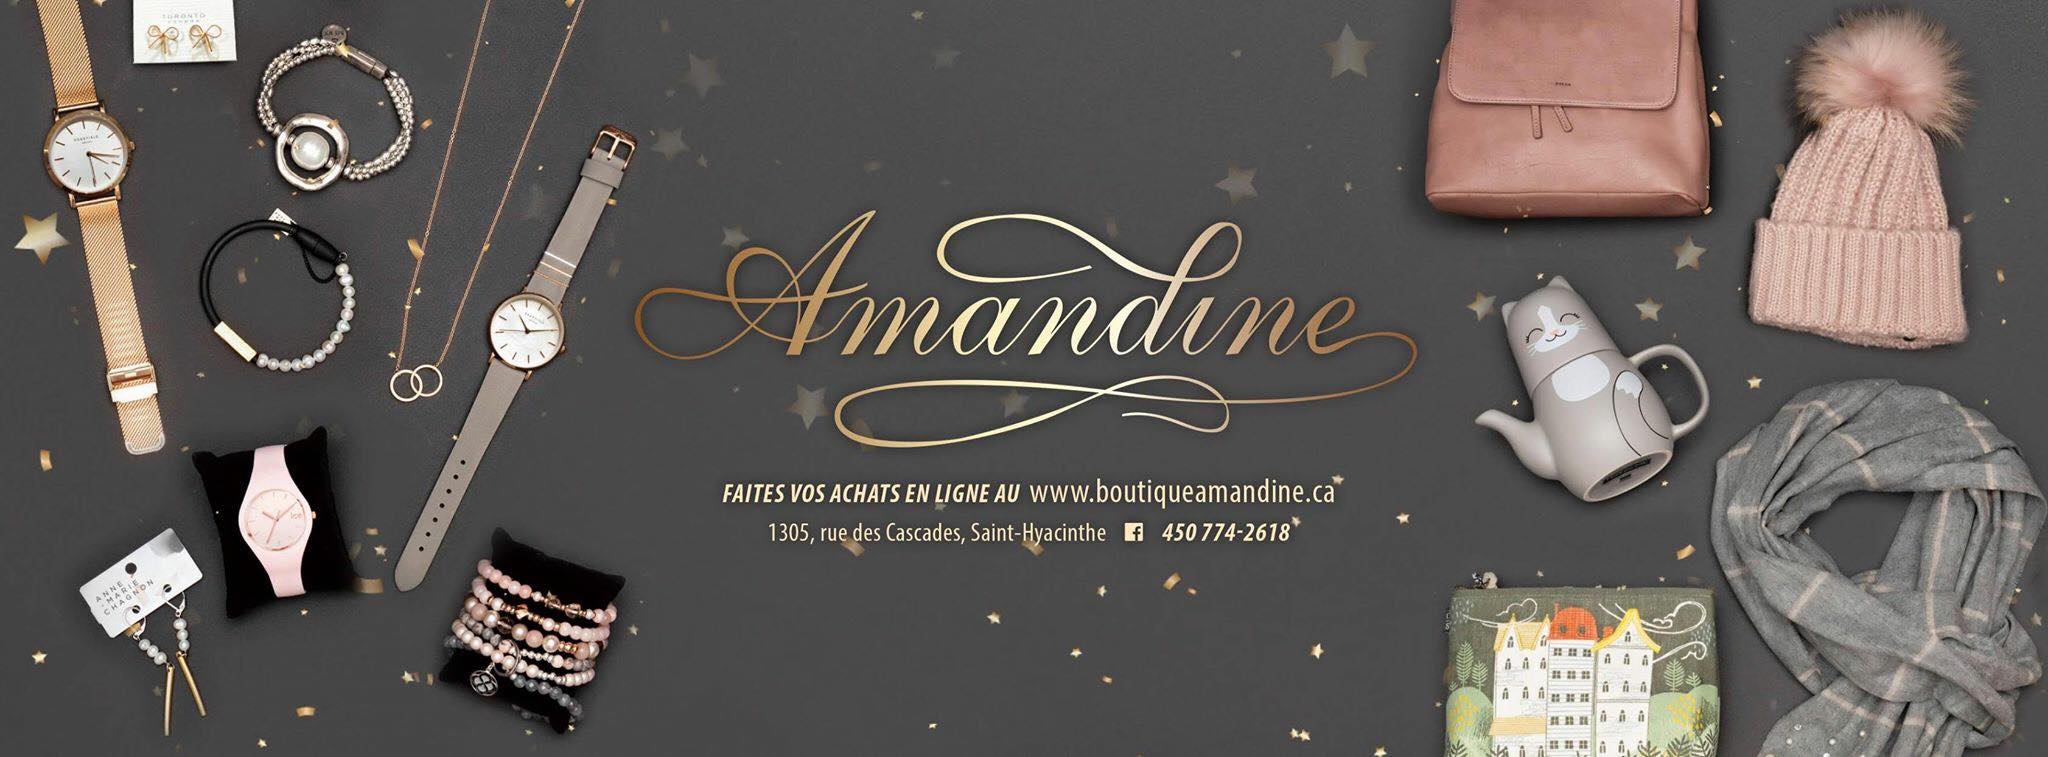 Boutique Amandine - Boutique Cadeaux